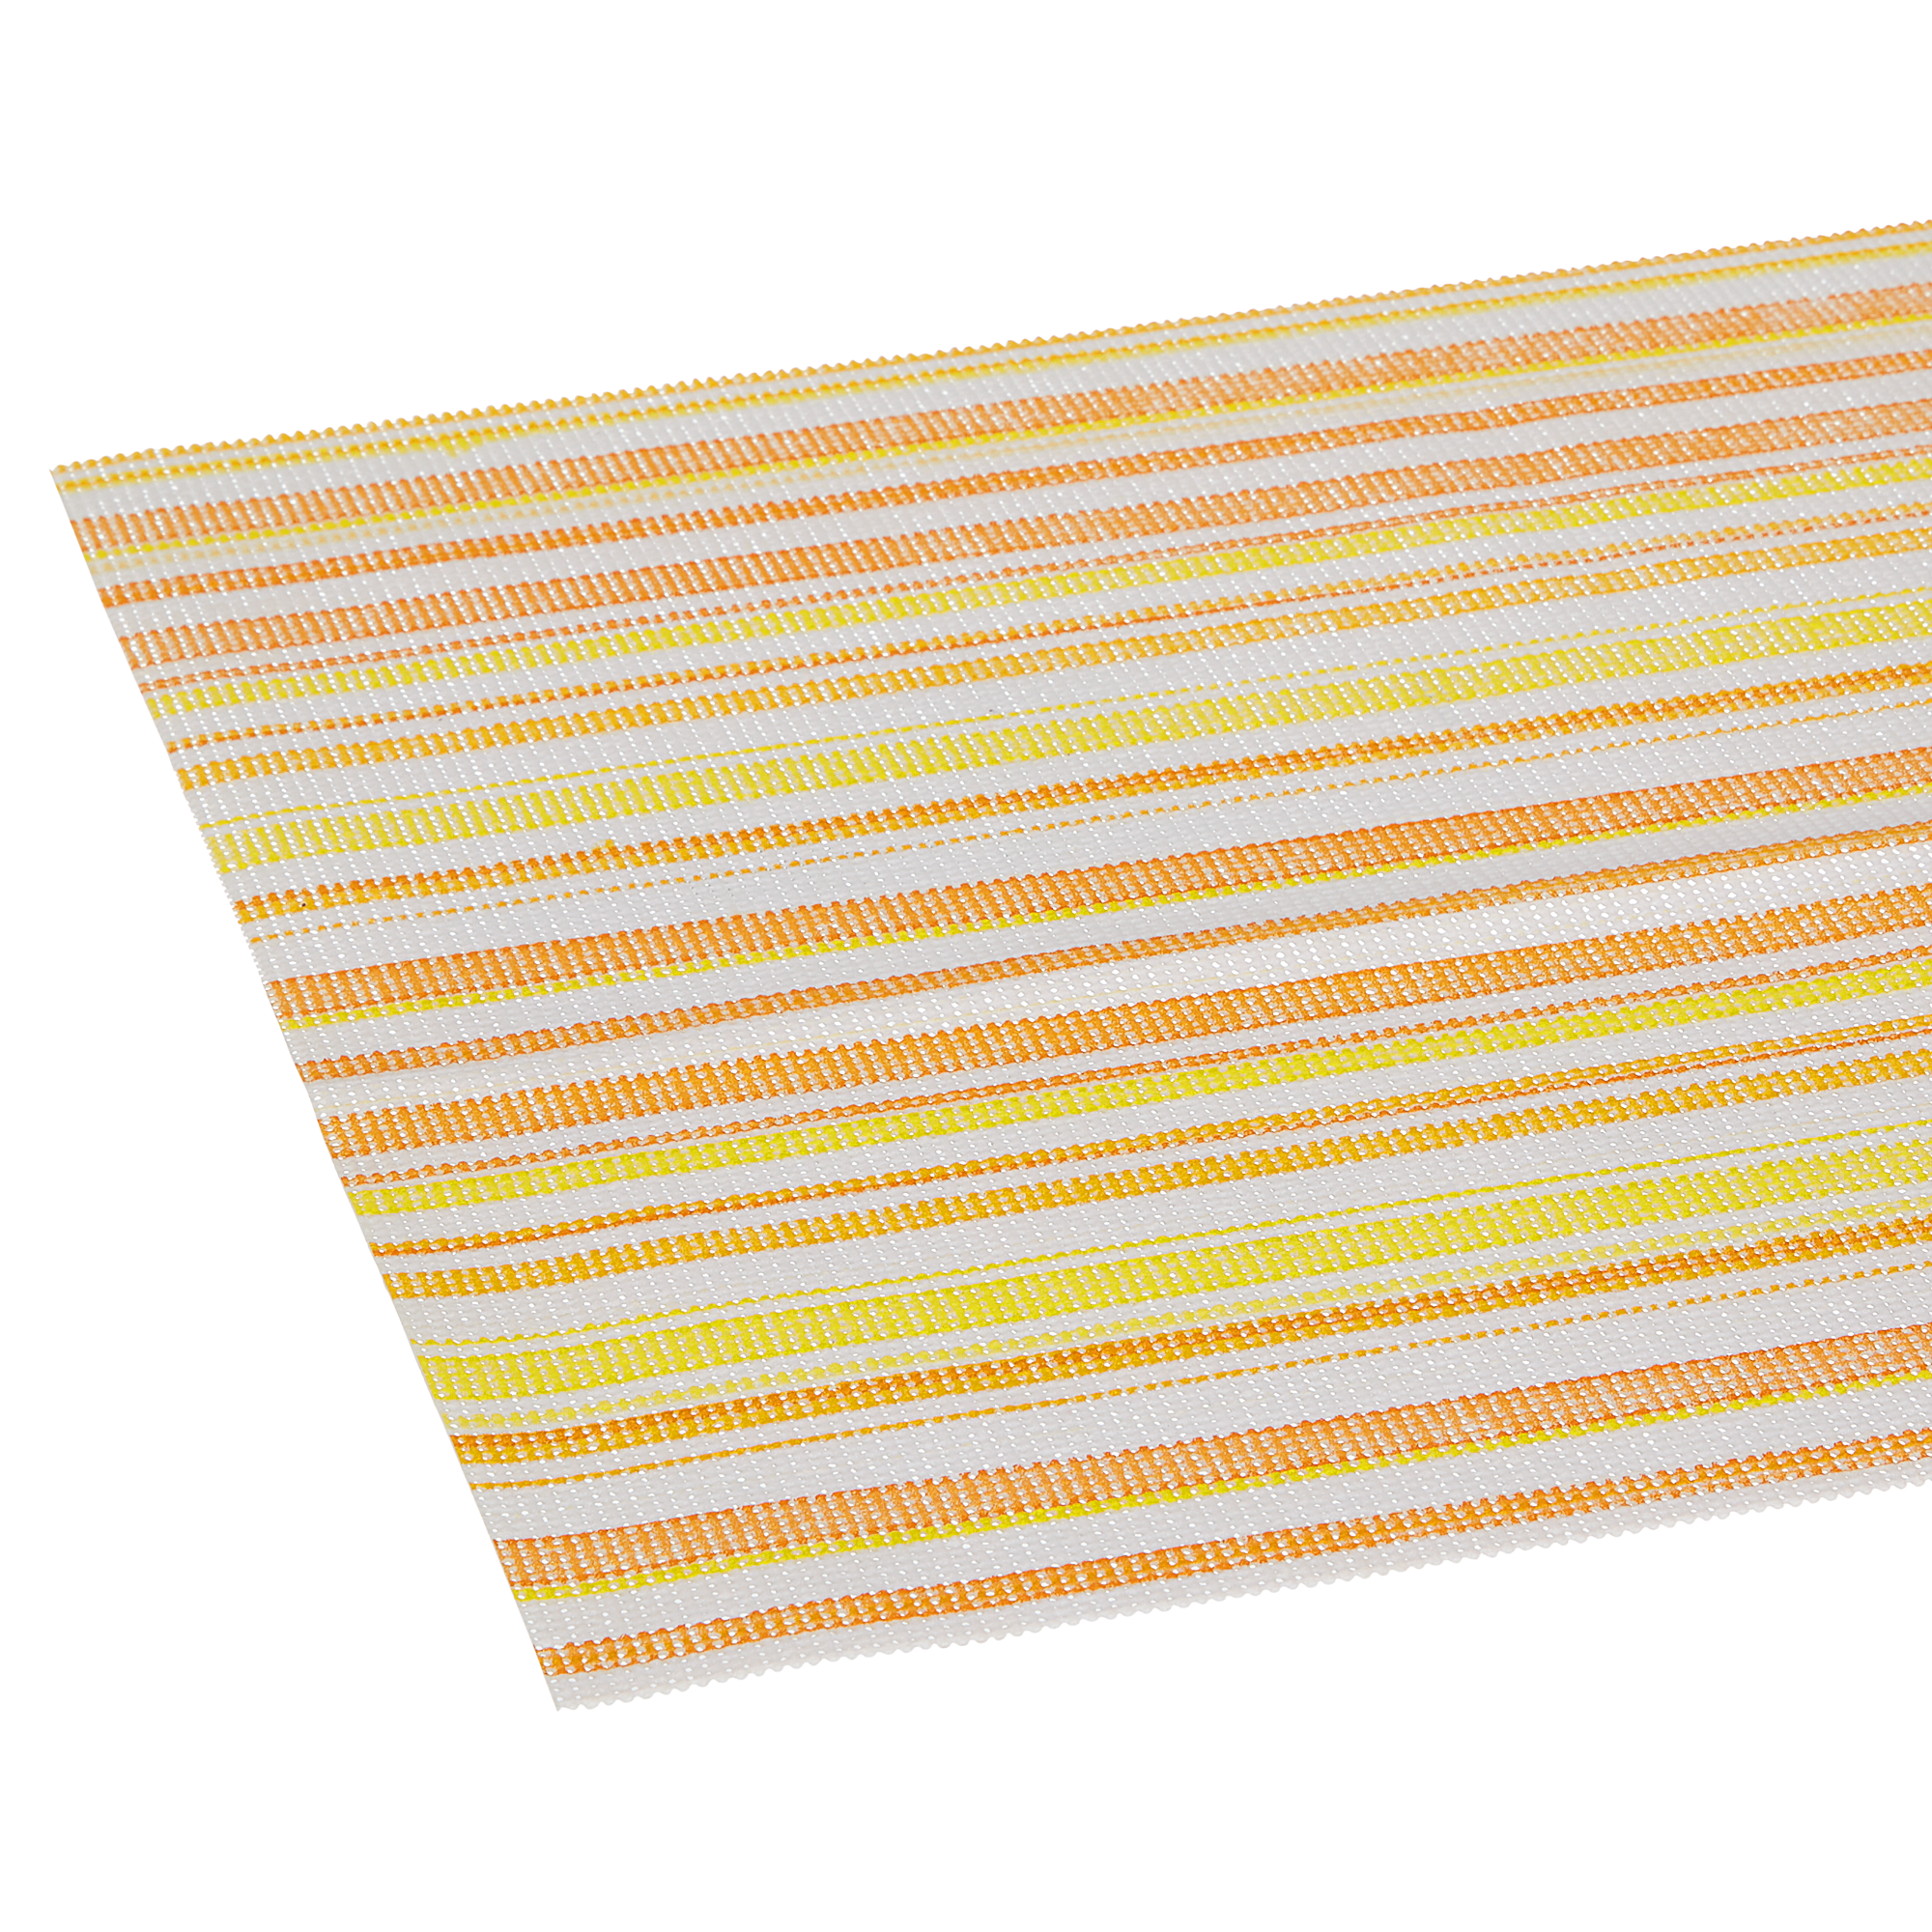 Tischläufer PVC Streifen gelb/weiß/orange 150 x 40 cm + product picture